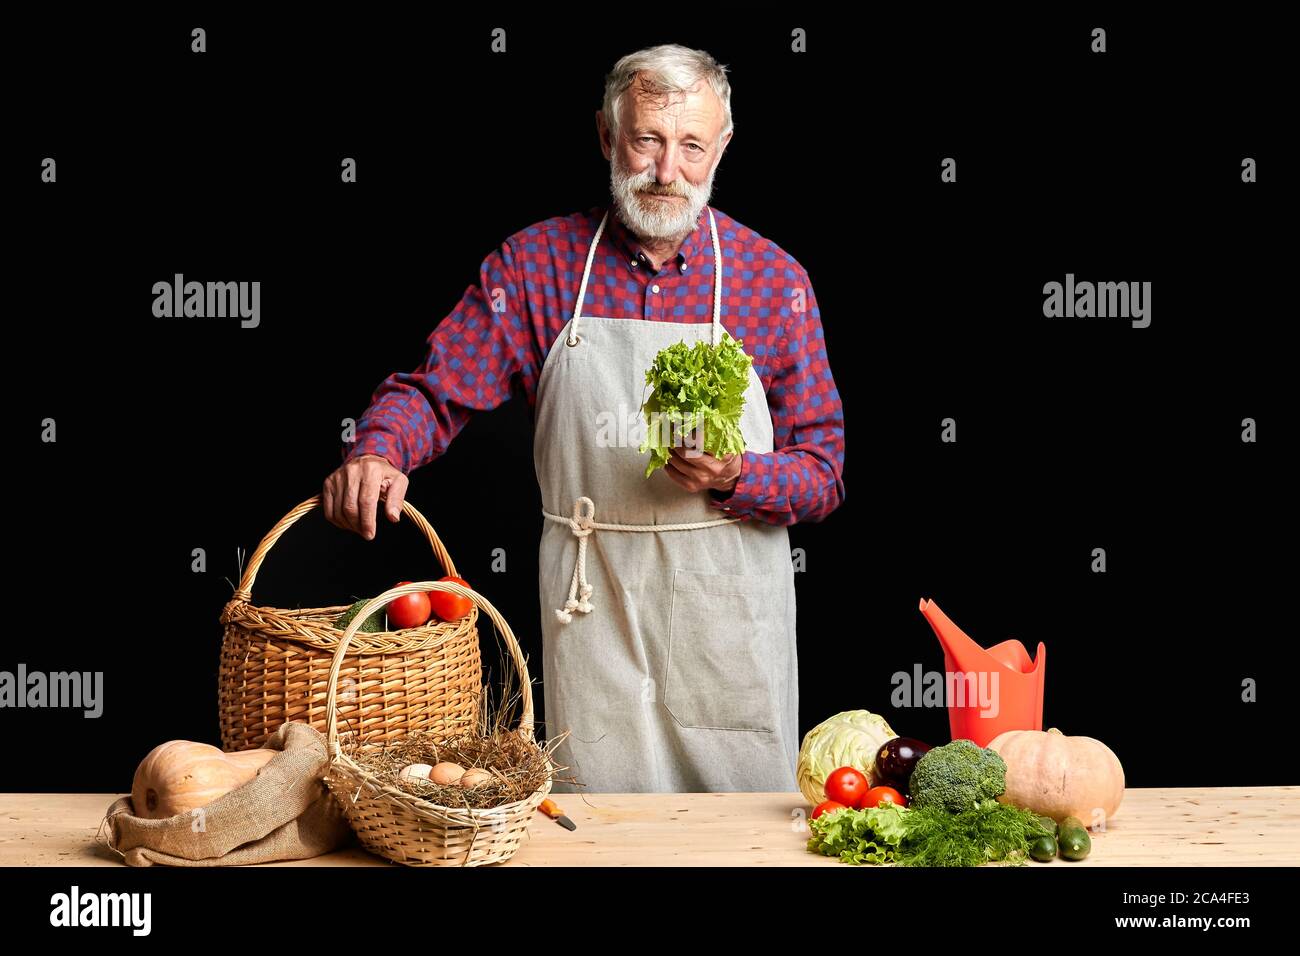 Stanco uomo dai capelli grigi con barba, proveniva dalla sua fattoria dopo una lunga giornata di lavoro, togliendo lattuga, pomodori, melanzane, zucche, cucum appena raccolti Foto Stock